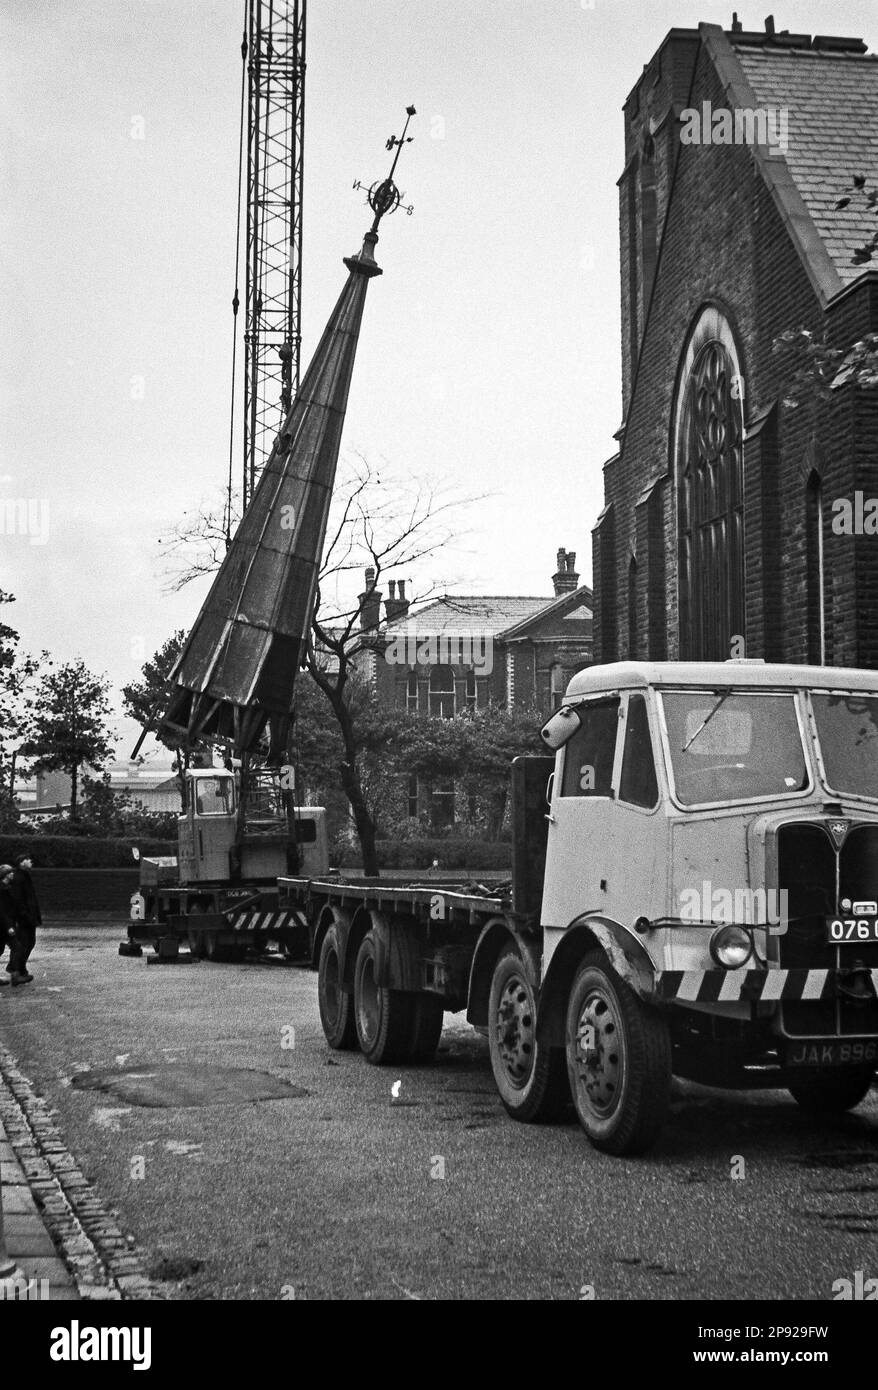 Intorno al Regno Unito - una di una sequenza di immagini che mostrano la rimozione della guglia a Hollins Grove Church, Darwen nel 1968 Foto Stock